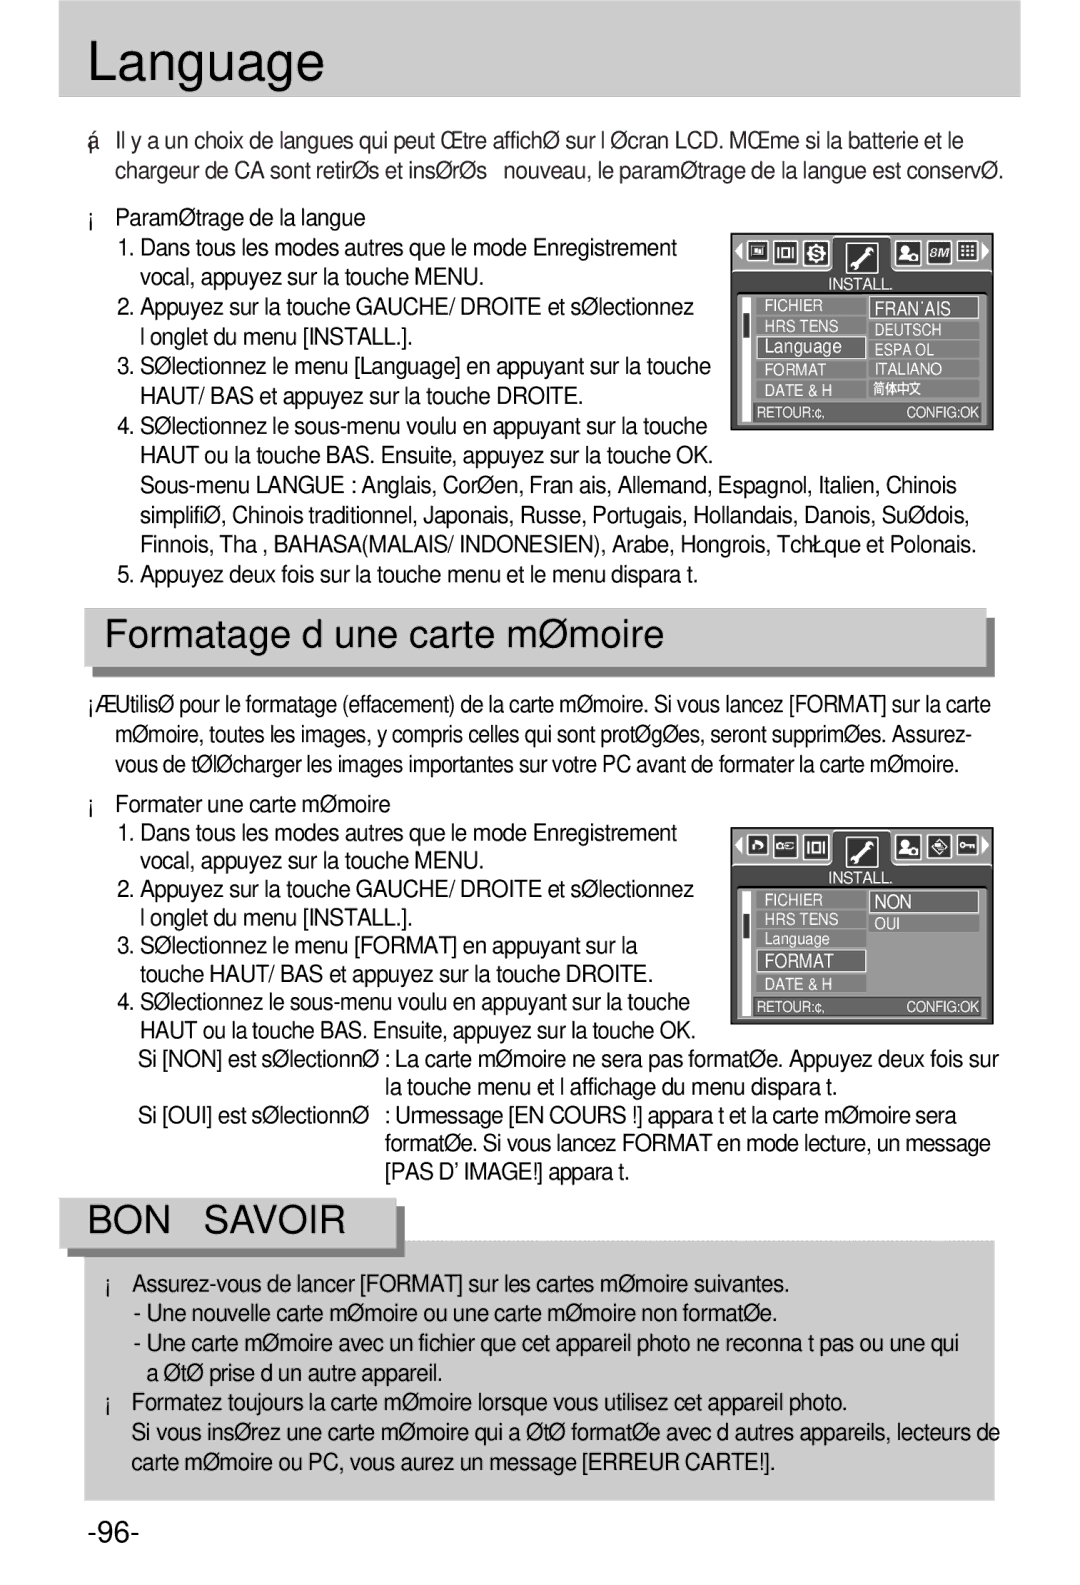 Samsung EC-V800ZSBA/FR manual Language, Formatage d’une carte mémoire 